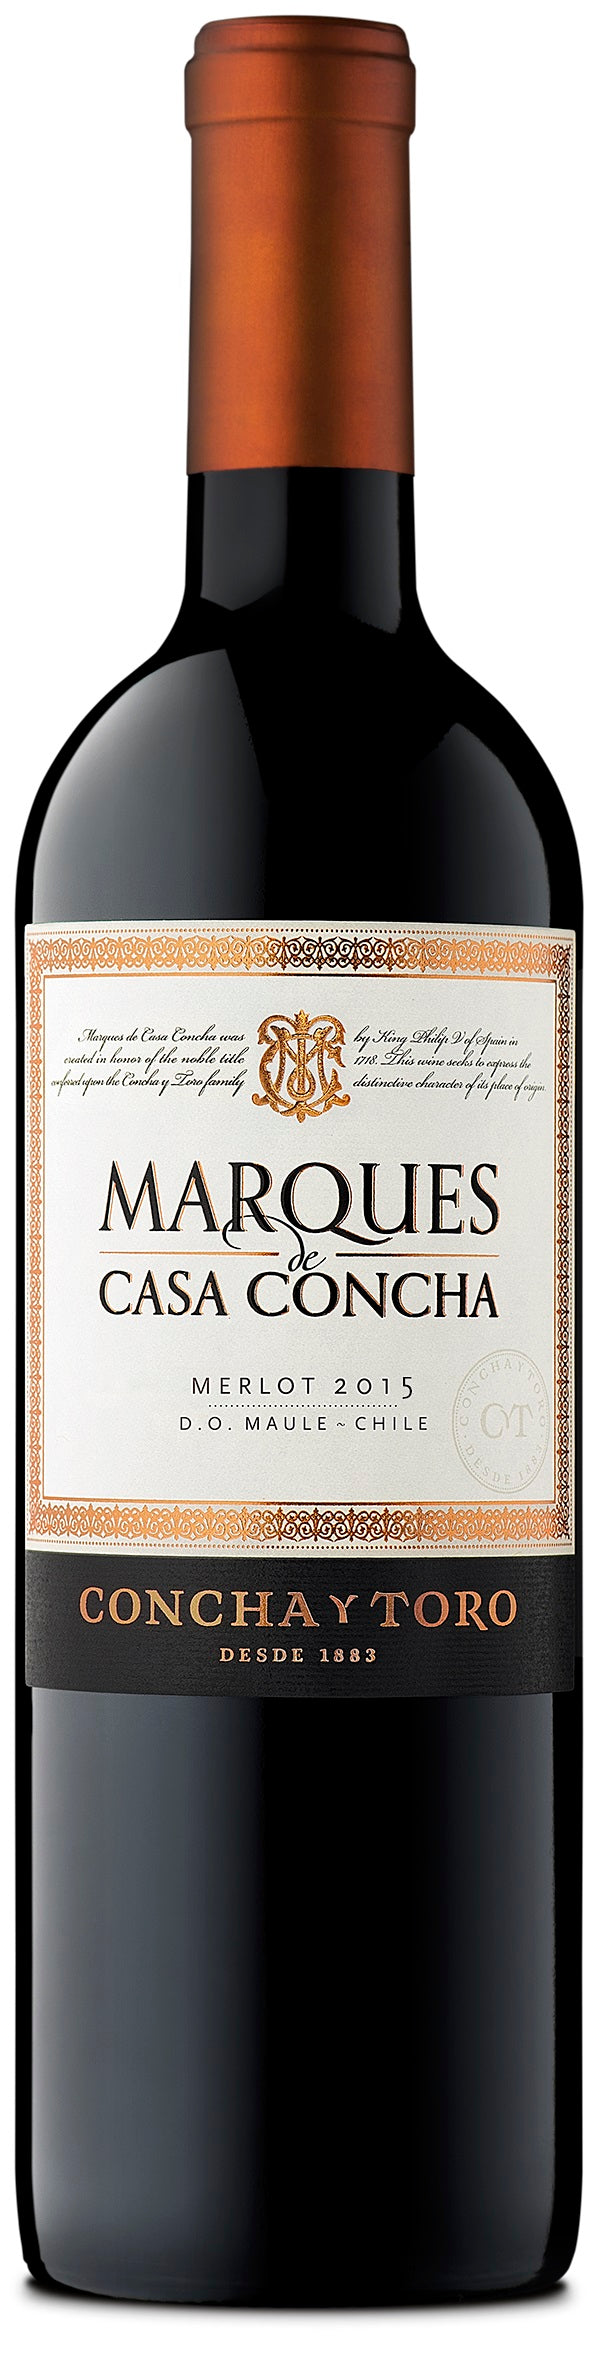 Marques de Casa Concha Merlot 2015